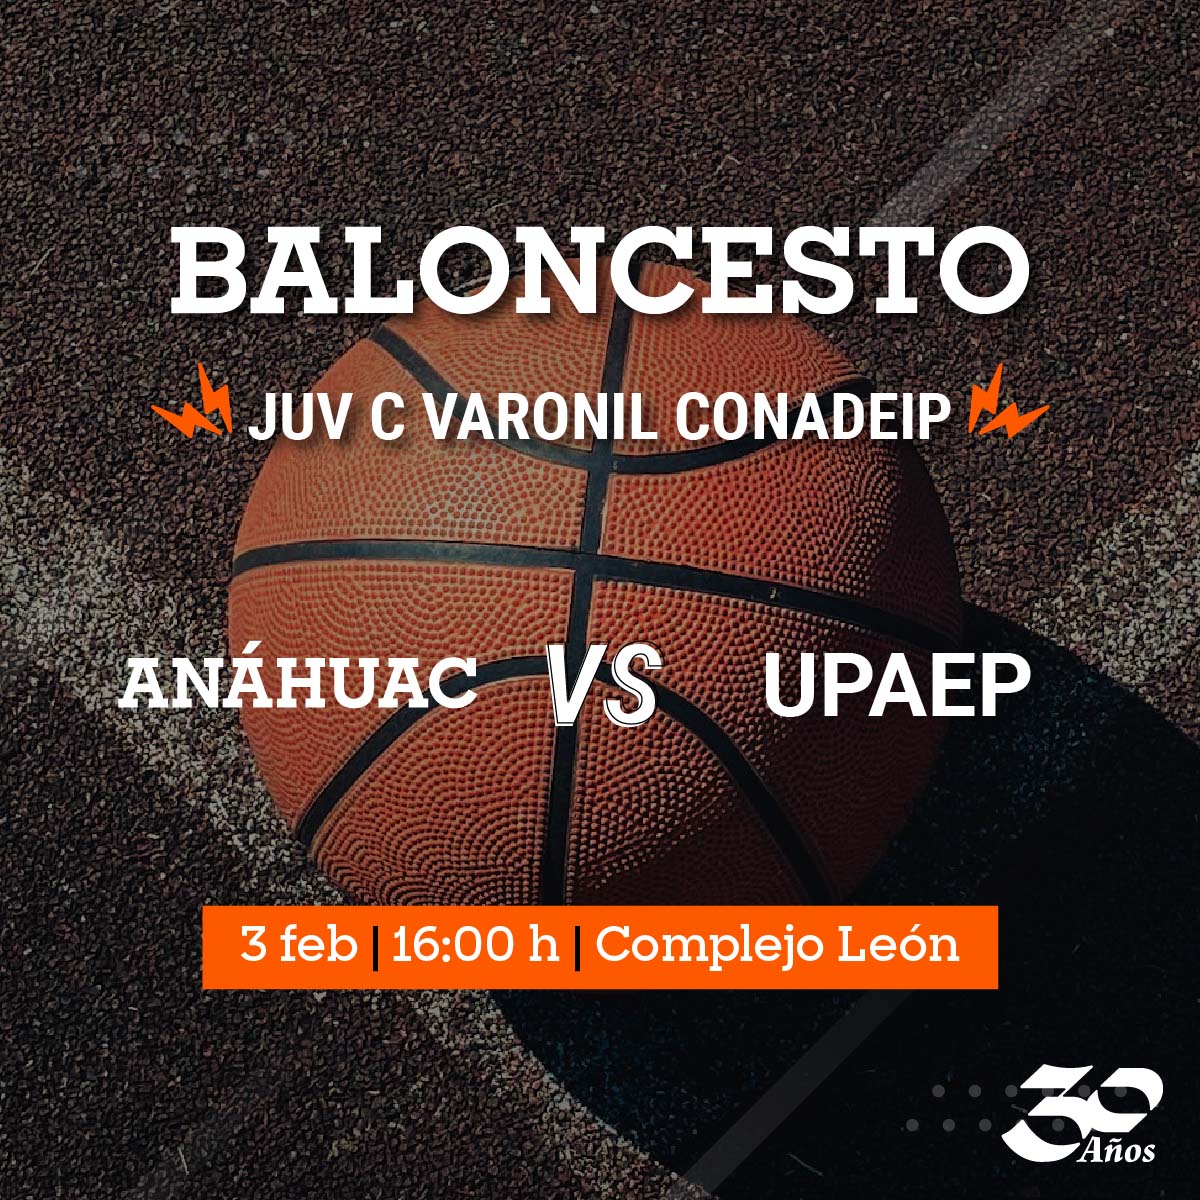 Baloncesto CONADEIP Varonil JUV C vs UPAEP